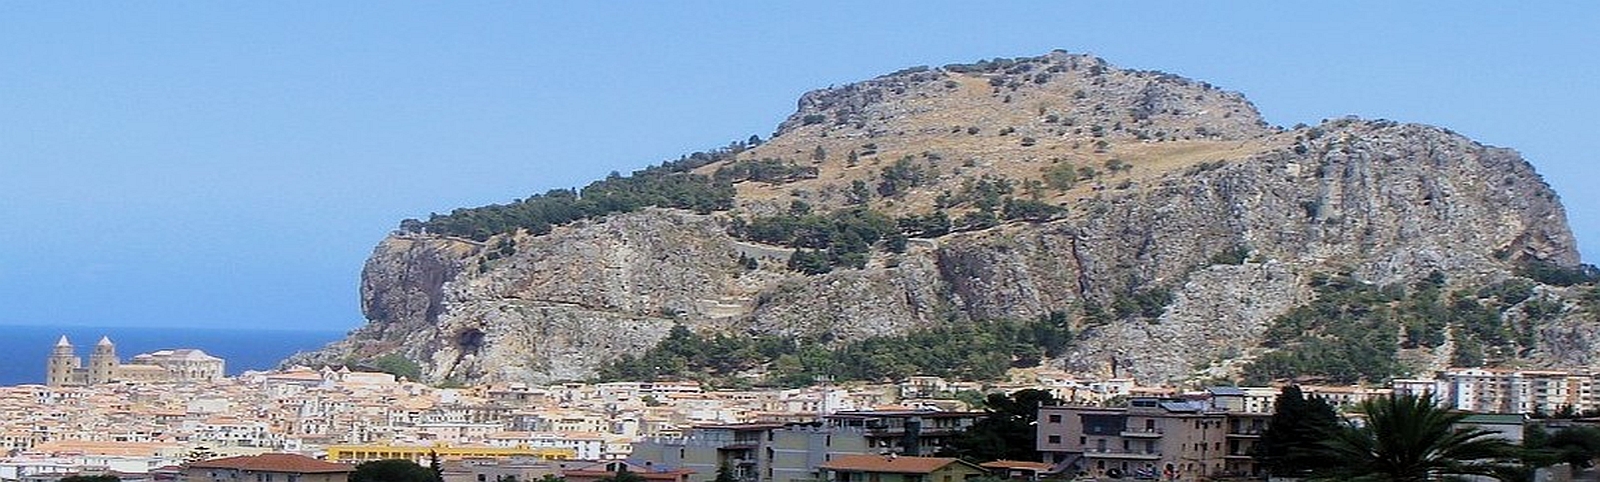 Rocca di Cefalù mit Stadt im Vordergrund Sizilien Italien